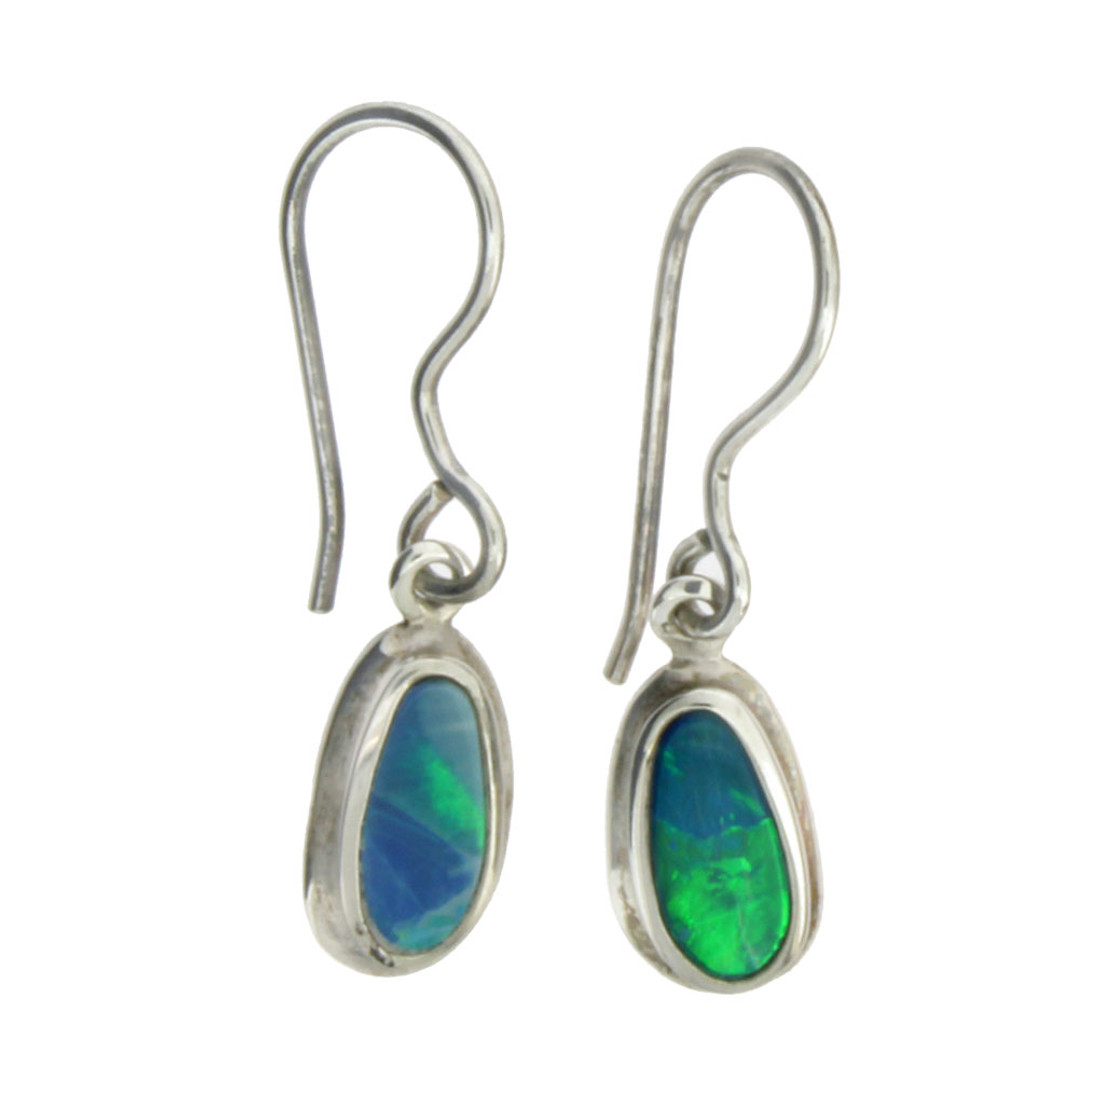 Small Simple Blue Green Opal Dangle Earrings Sterling Silver Jewelry